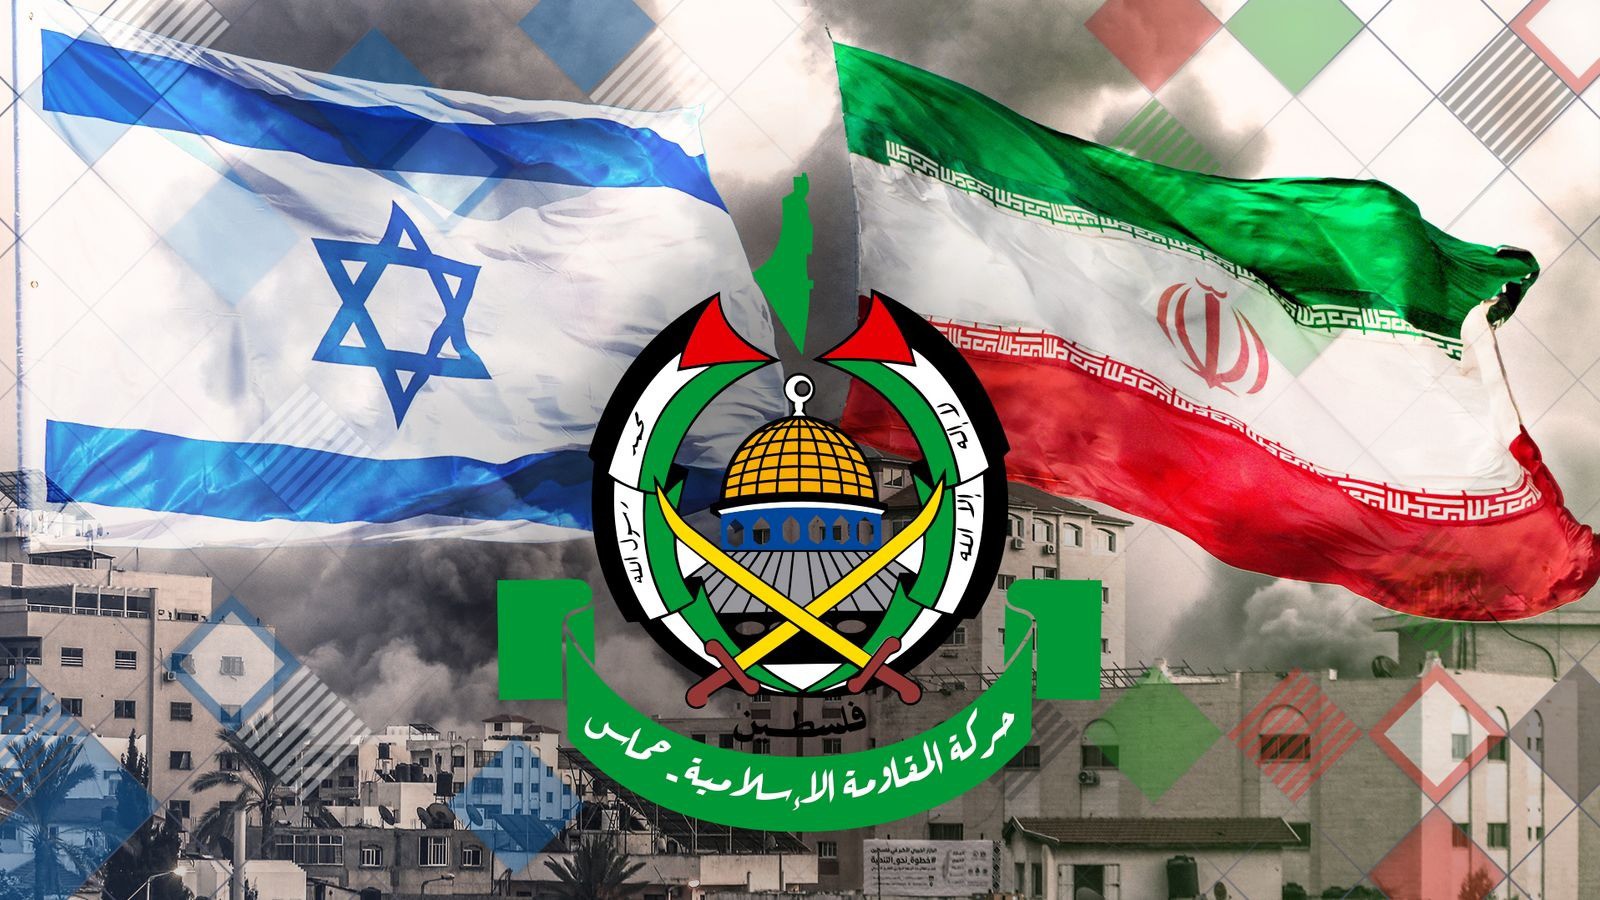 Trước khi thù địch, Israel và Iran từng hình thành một liên minh chiến lược. Ảnh minh họa: Sky News